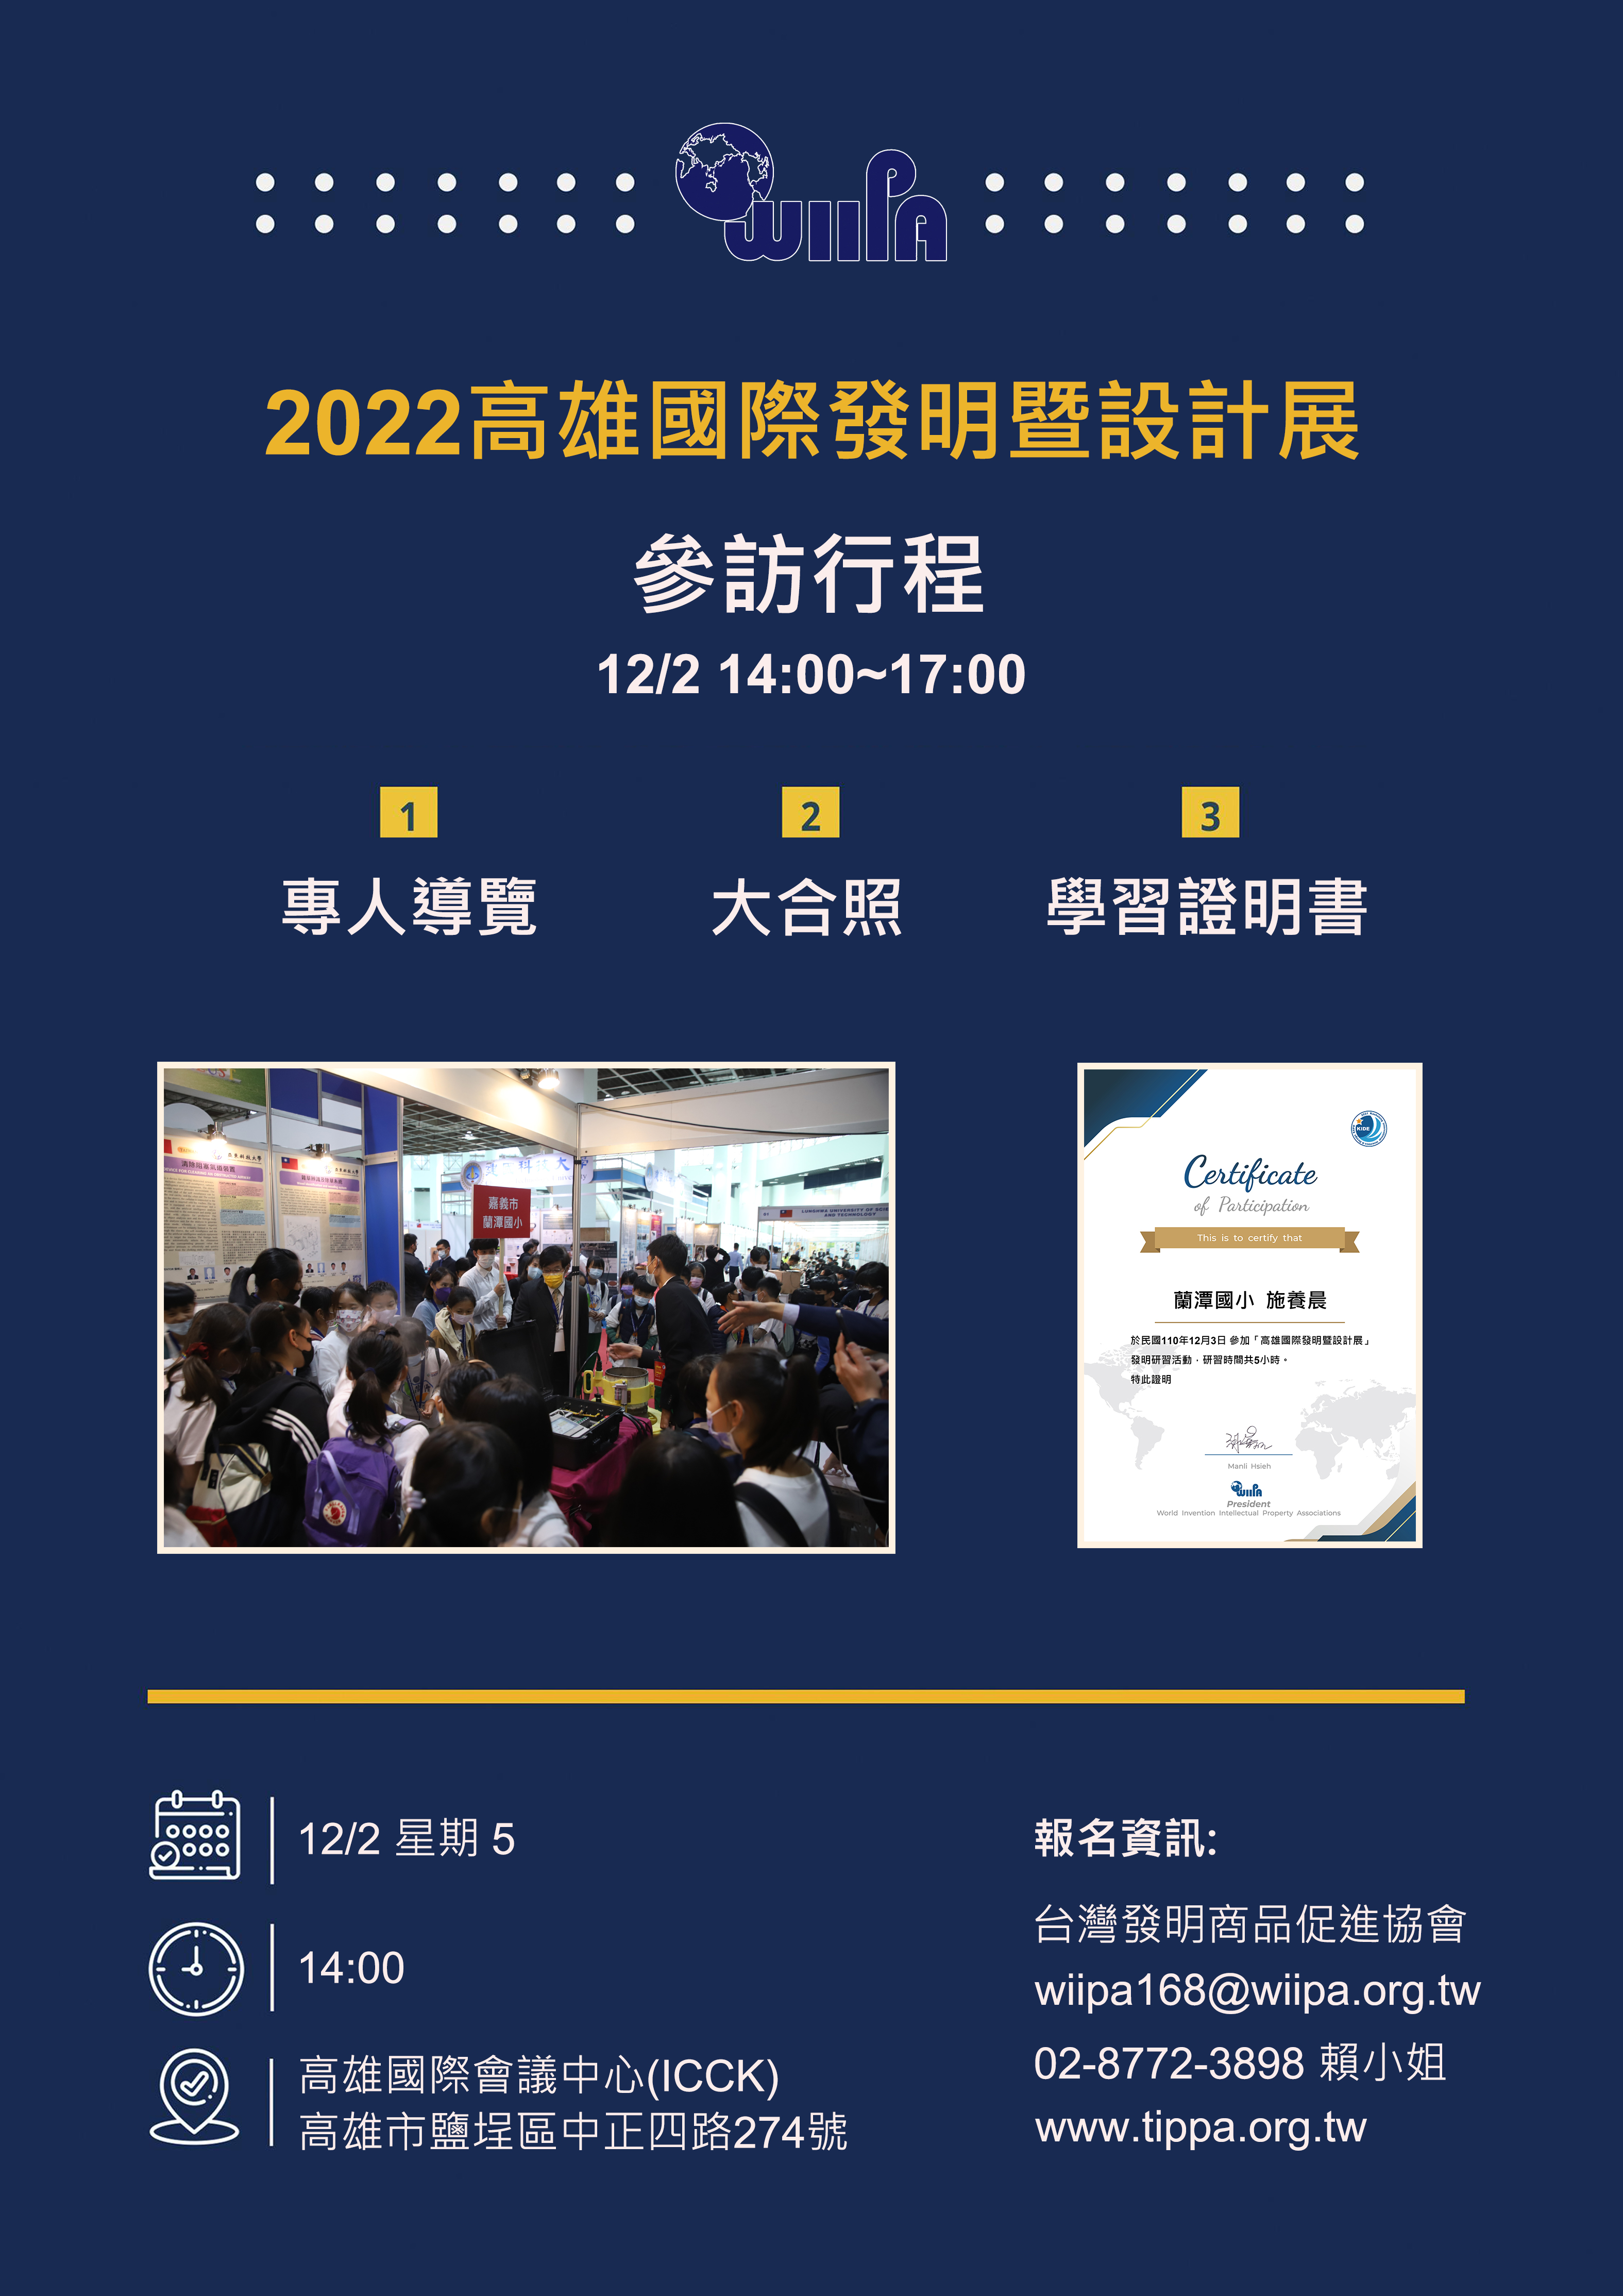 【台灣發明商品促進協會】2022高雄國際發明暨設計展